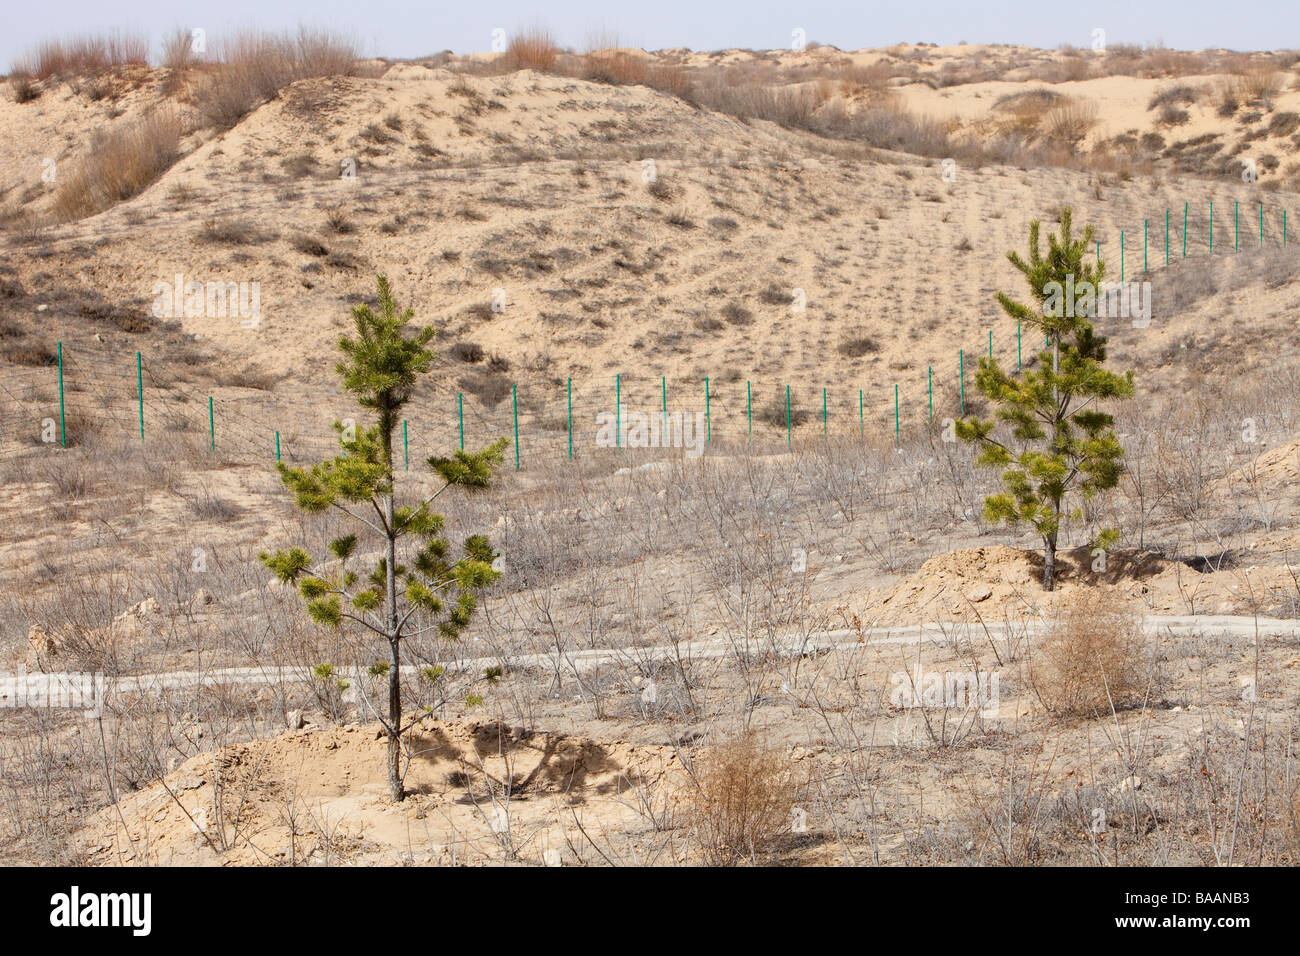 Baumpflanzung in der Provinz Shanxi, hervorgerufen durch Klimawandel Wüstenbildung aufzuhalten versuchen induzierte Trockenheit. Stockfoto